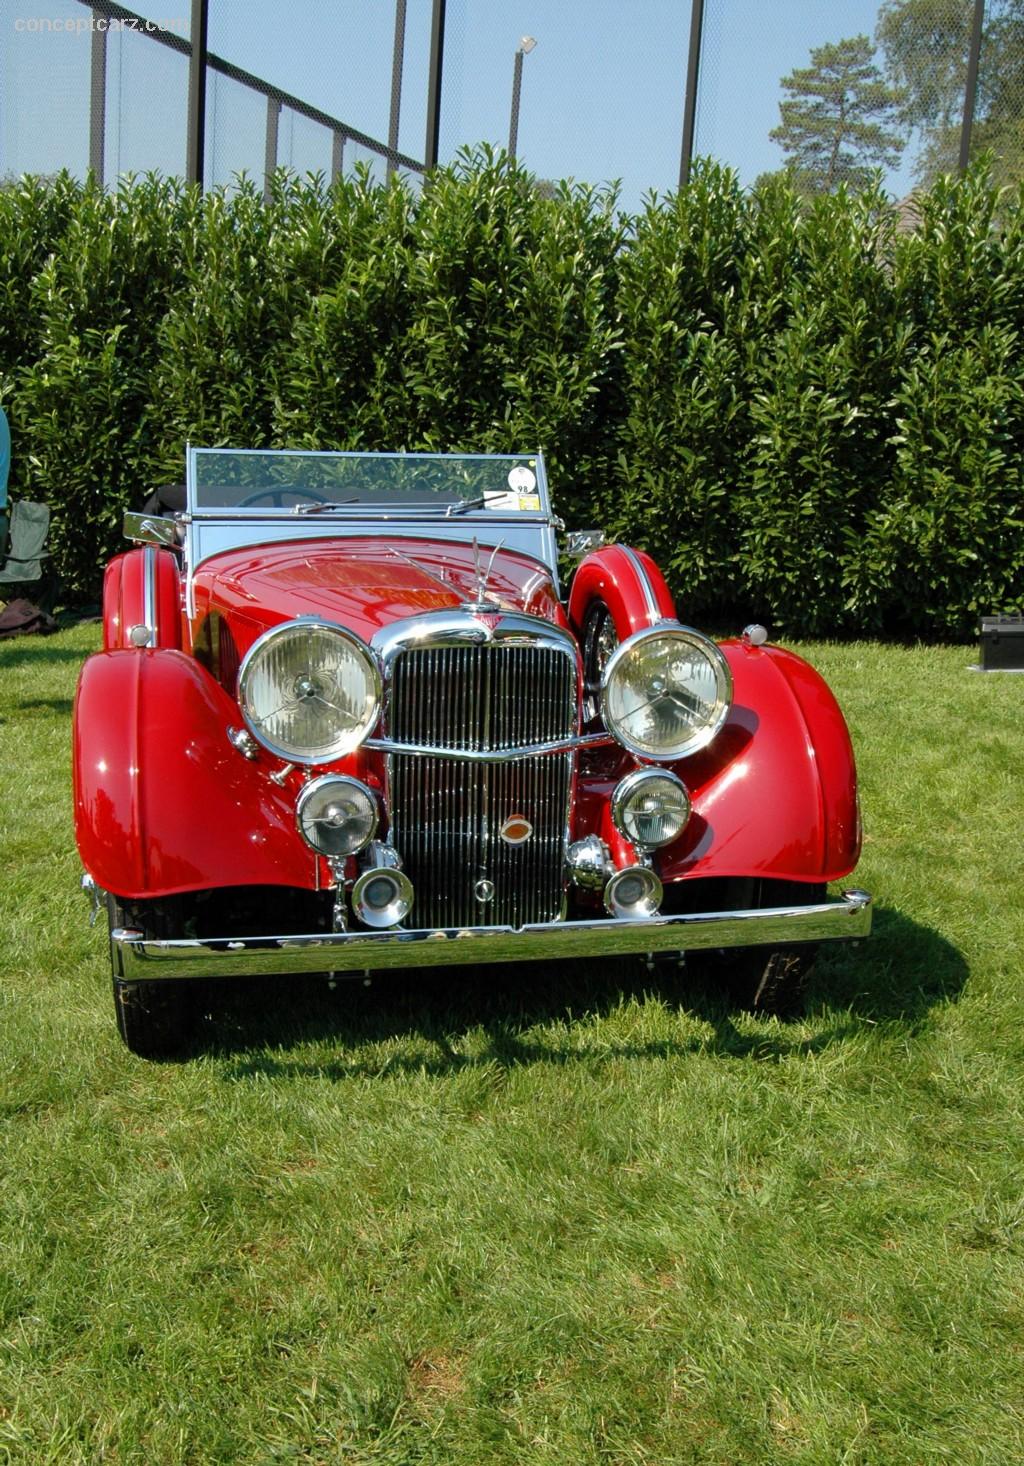 1939 Alvis Speed 25